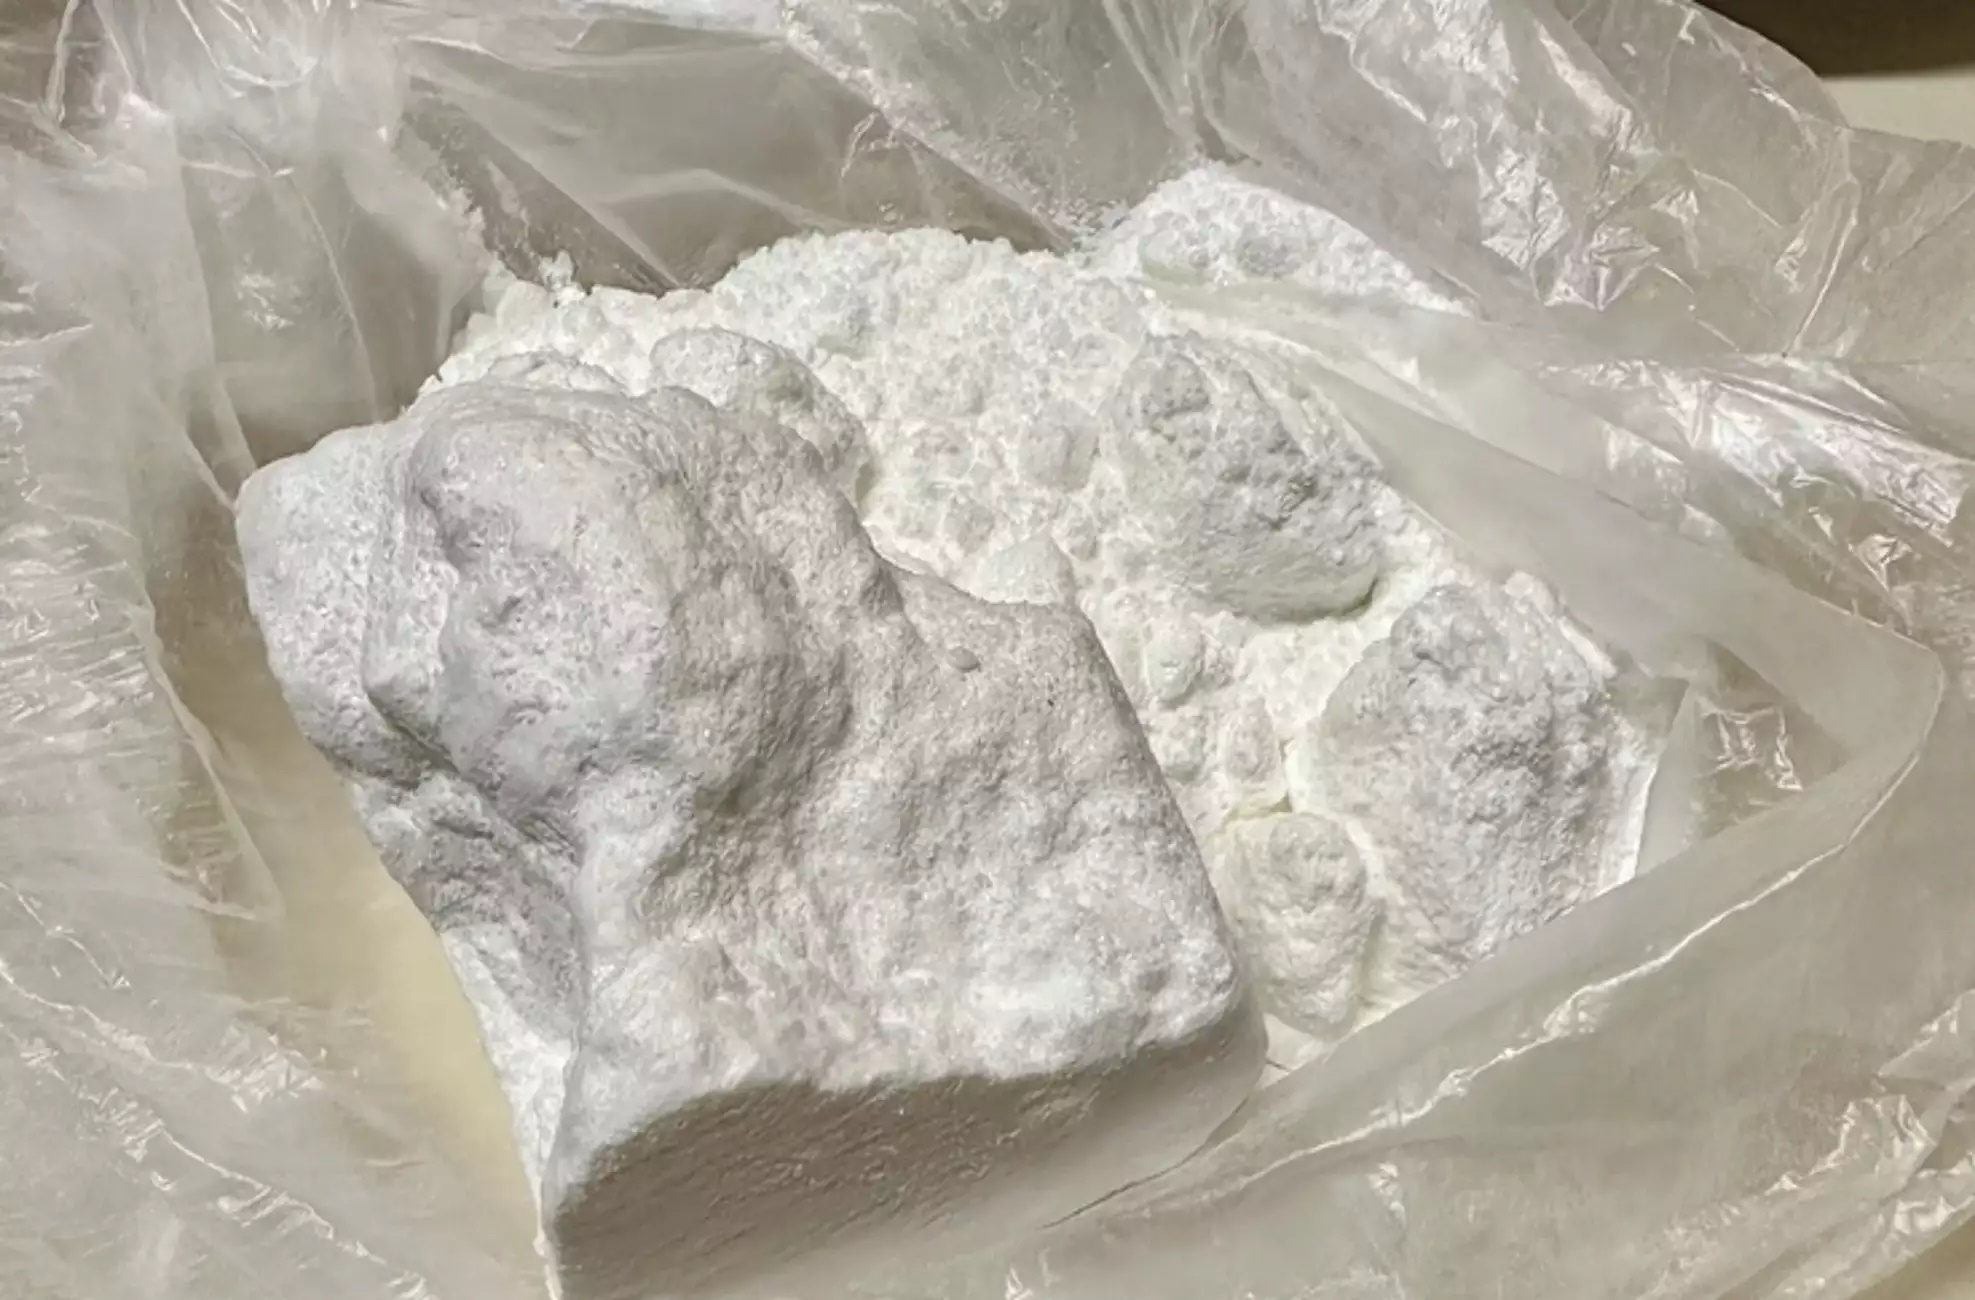 Πειραιάς: Εντοπίστηκαν πάνω από 60 κιλά κοκαΐνης μέσα σε κοντέινερ